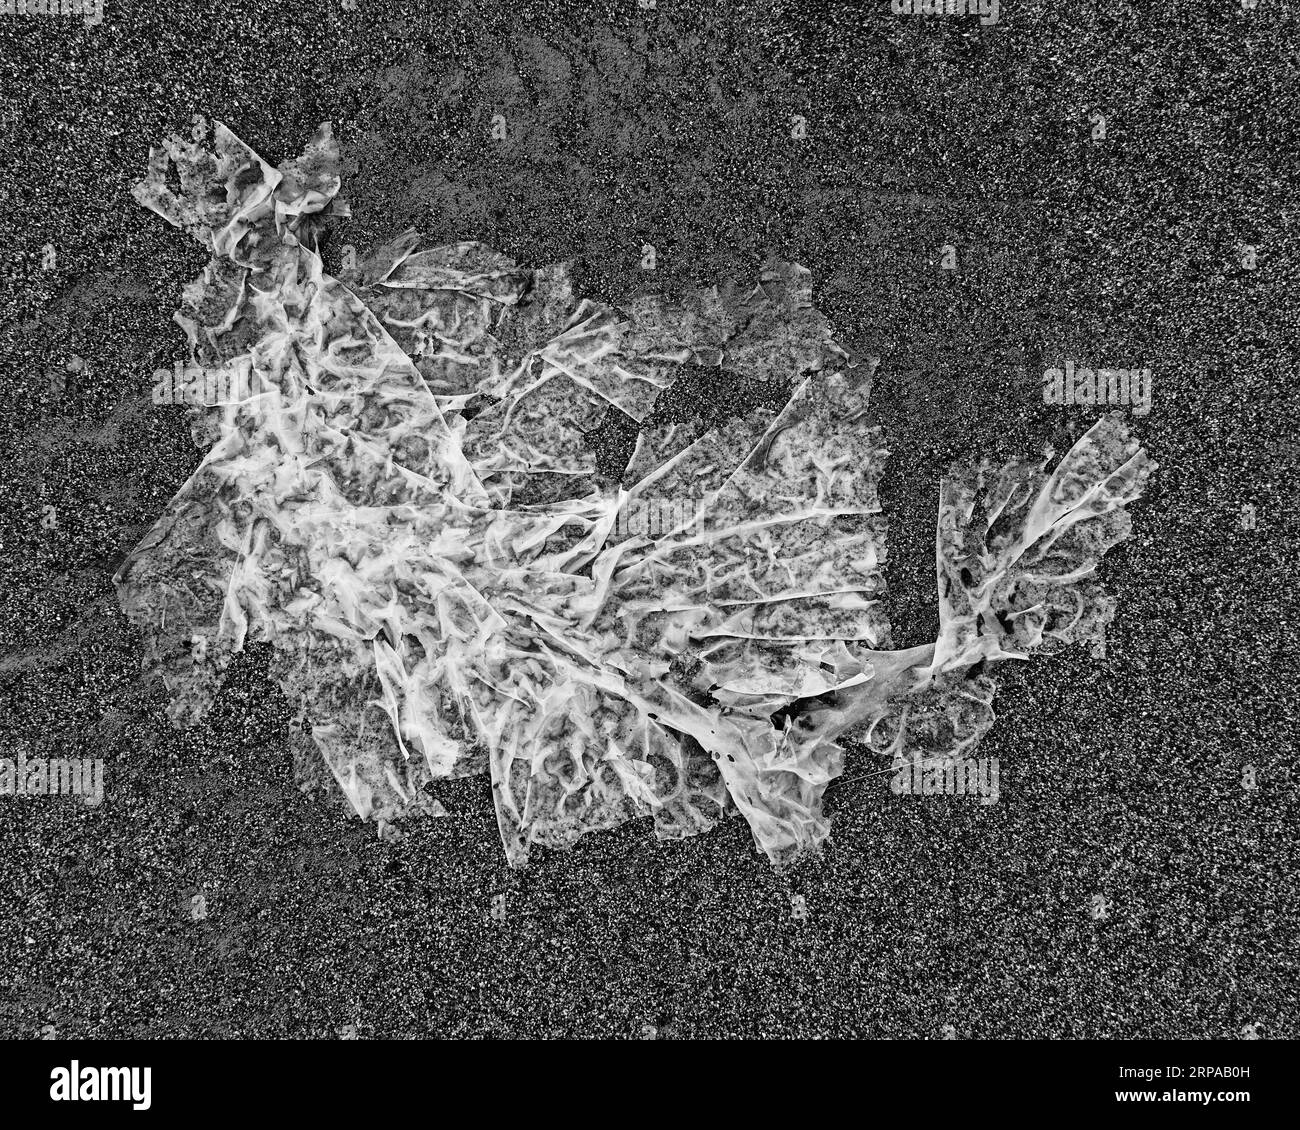 Hintergrund: Die grafische Ressource der Natur. Seetang auf Sand sieht aus wie ein durchsichtiger Fisch, in tiefem Schwarz und weiß. Stockfoto